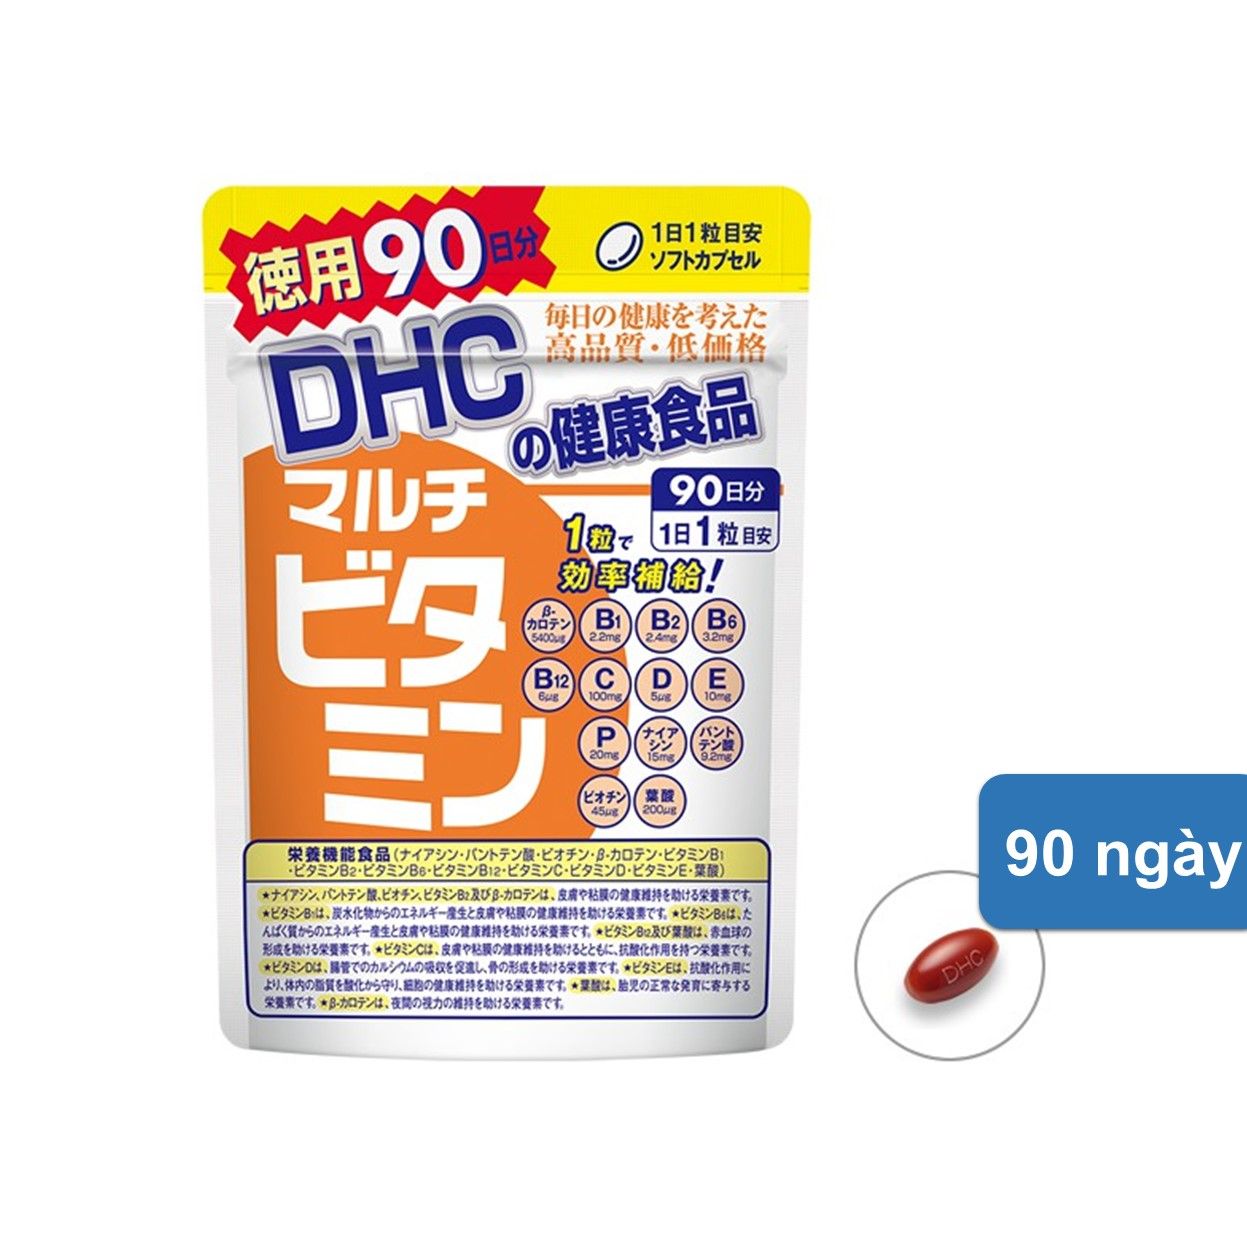  Viên uống DHC Vitamin Tổng Hợp 90 ngày 